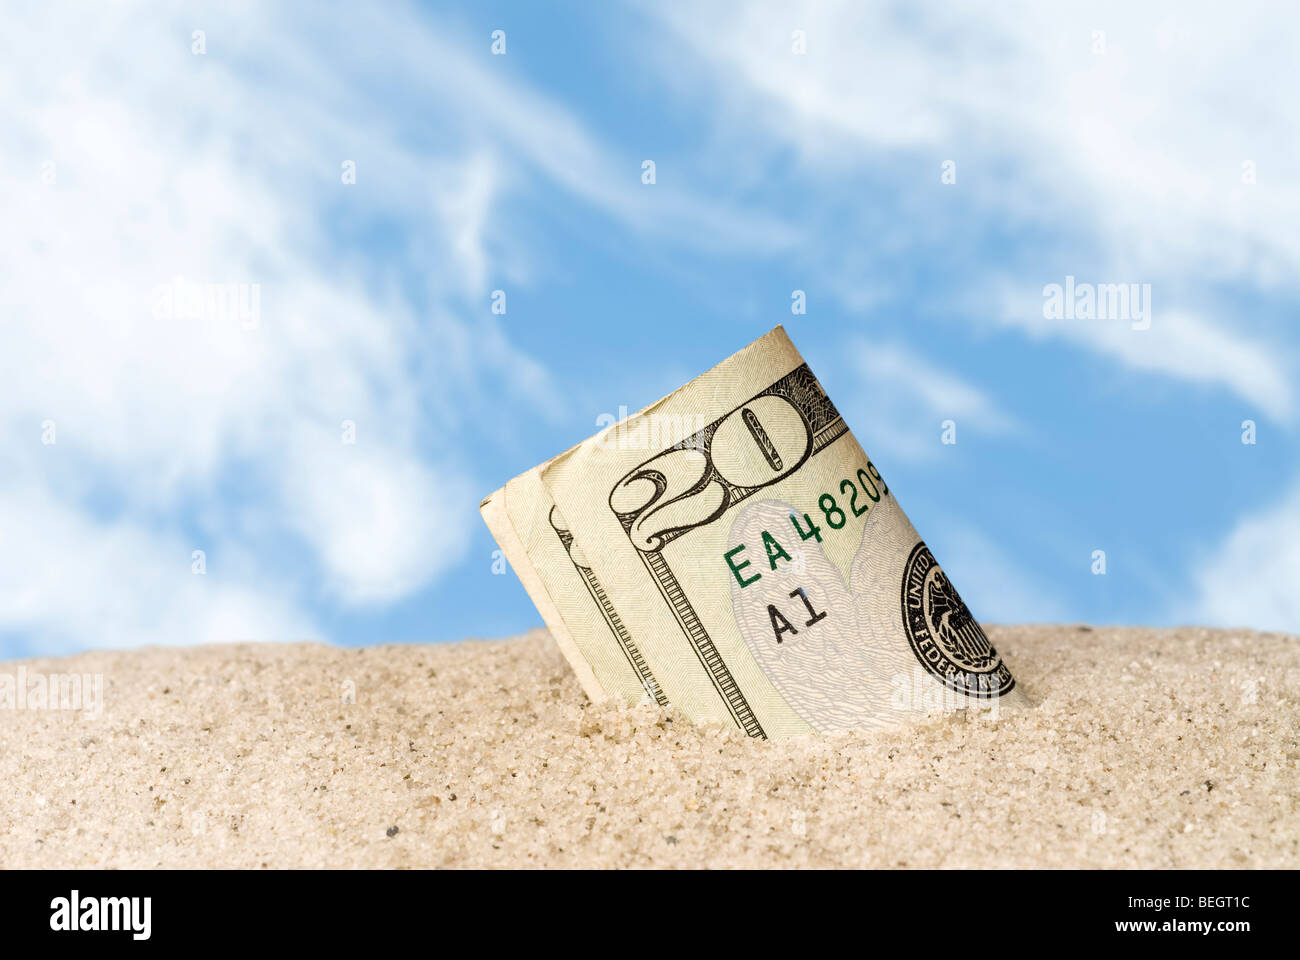 Une liasse d'argent perdus et trouvés dans le sable à la plage. Banque D'Images